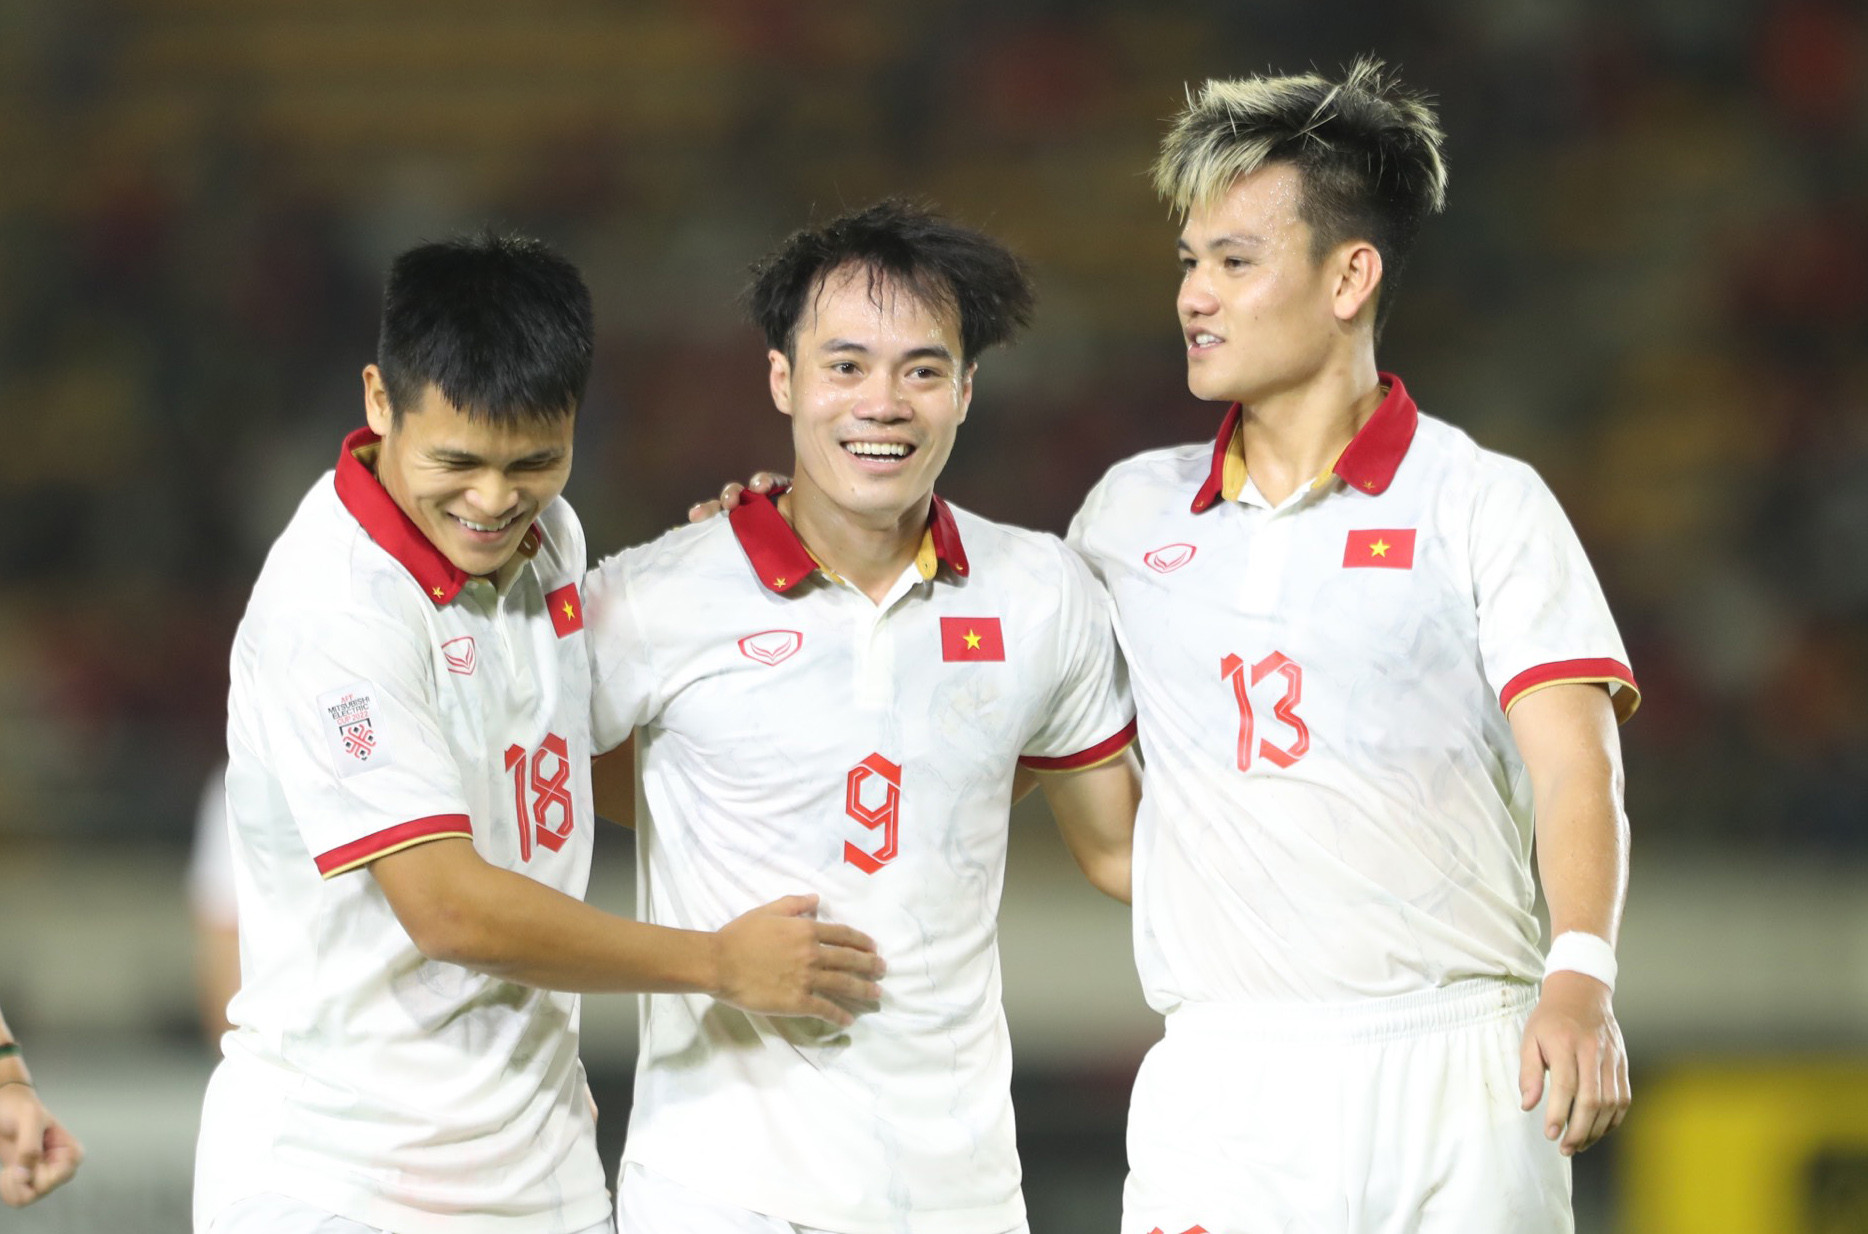 Lịch thi đấu của tuyển Việt Nam tại AFF Cup 2022 mới nhất: Tử chiến Indonesia ở bán kết